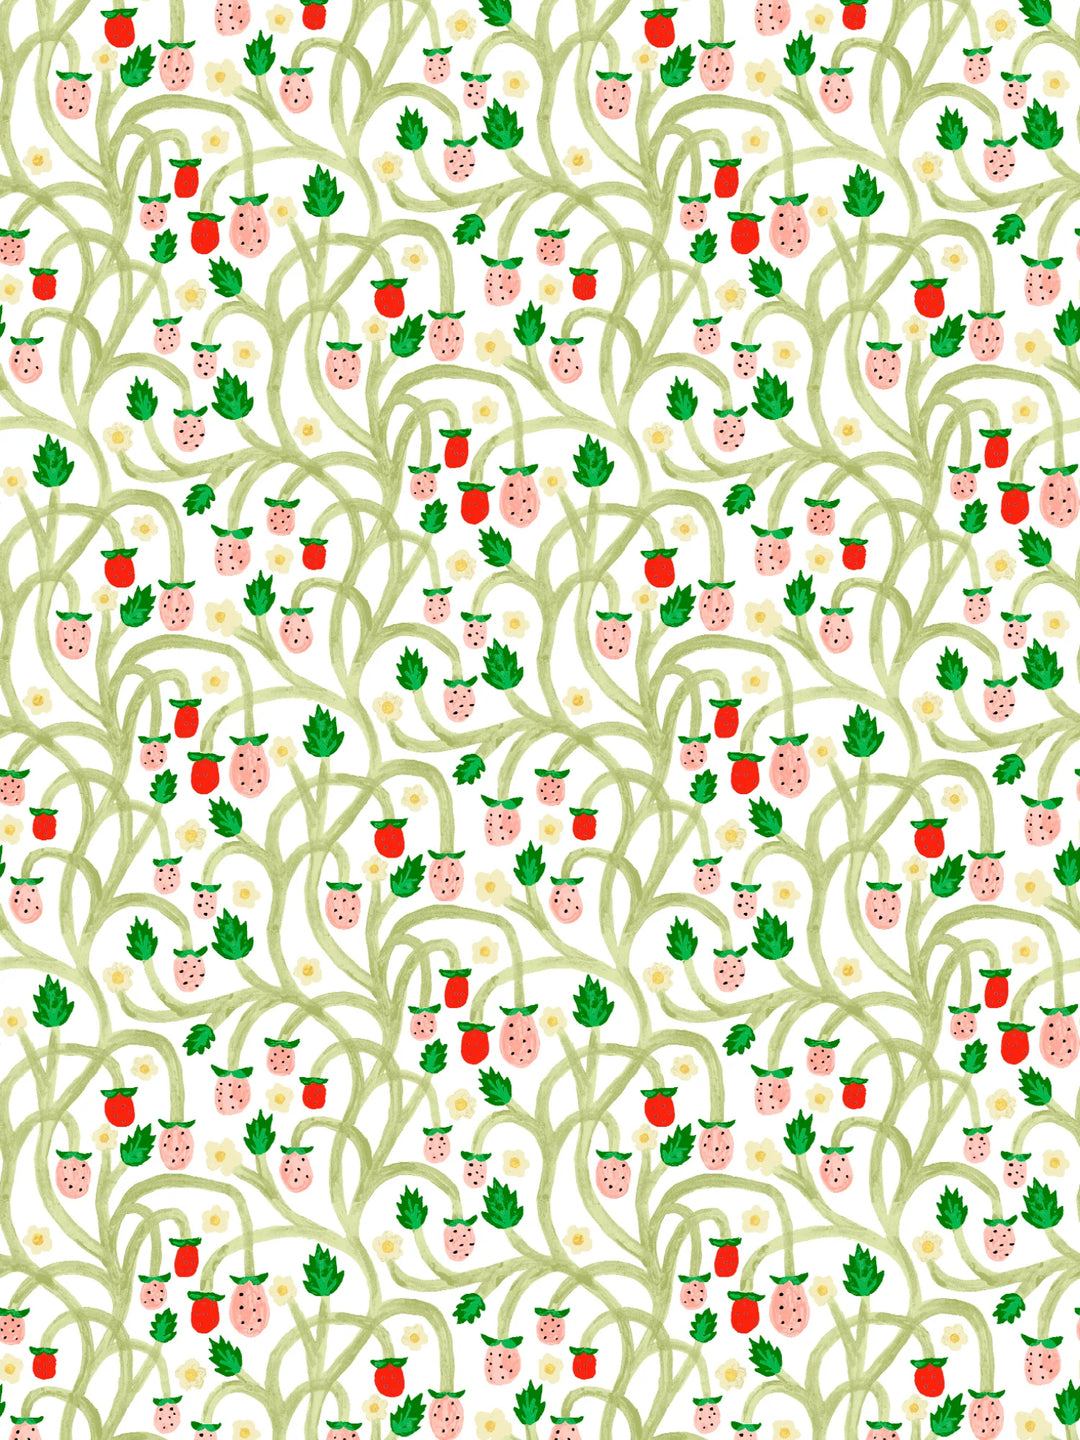 wild-strawberries-wallpaper-midnight-vine-cream